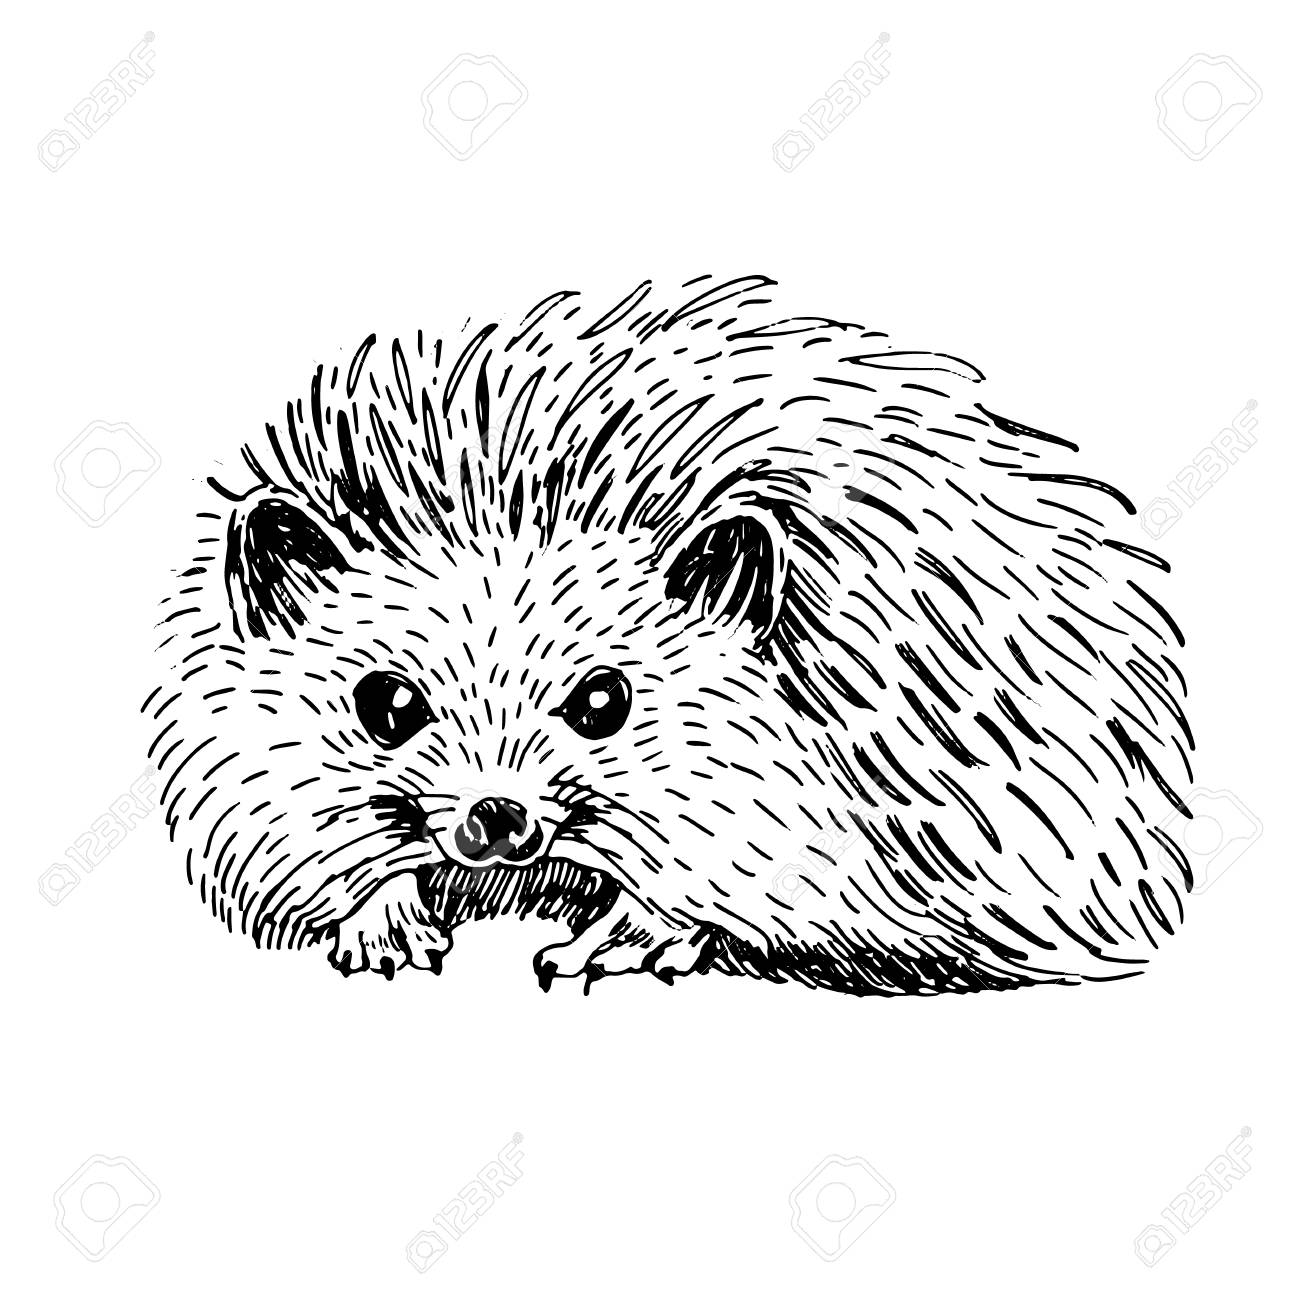 Sketch line art drawing of hedgehog